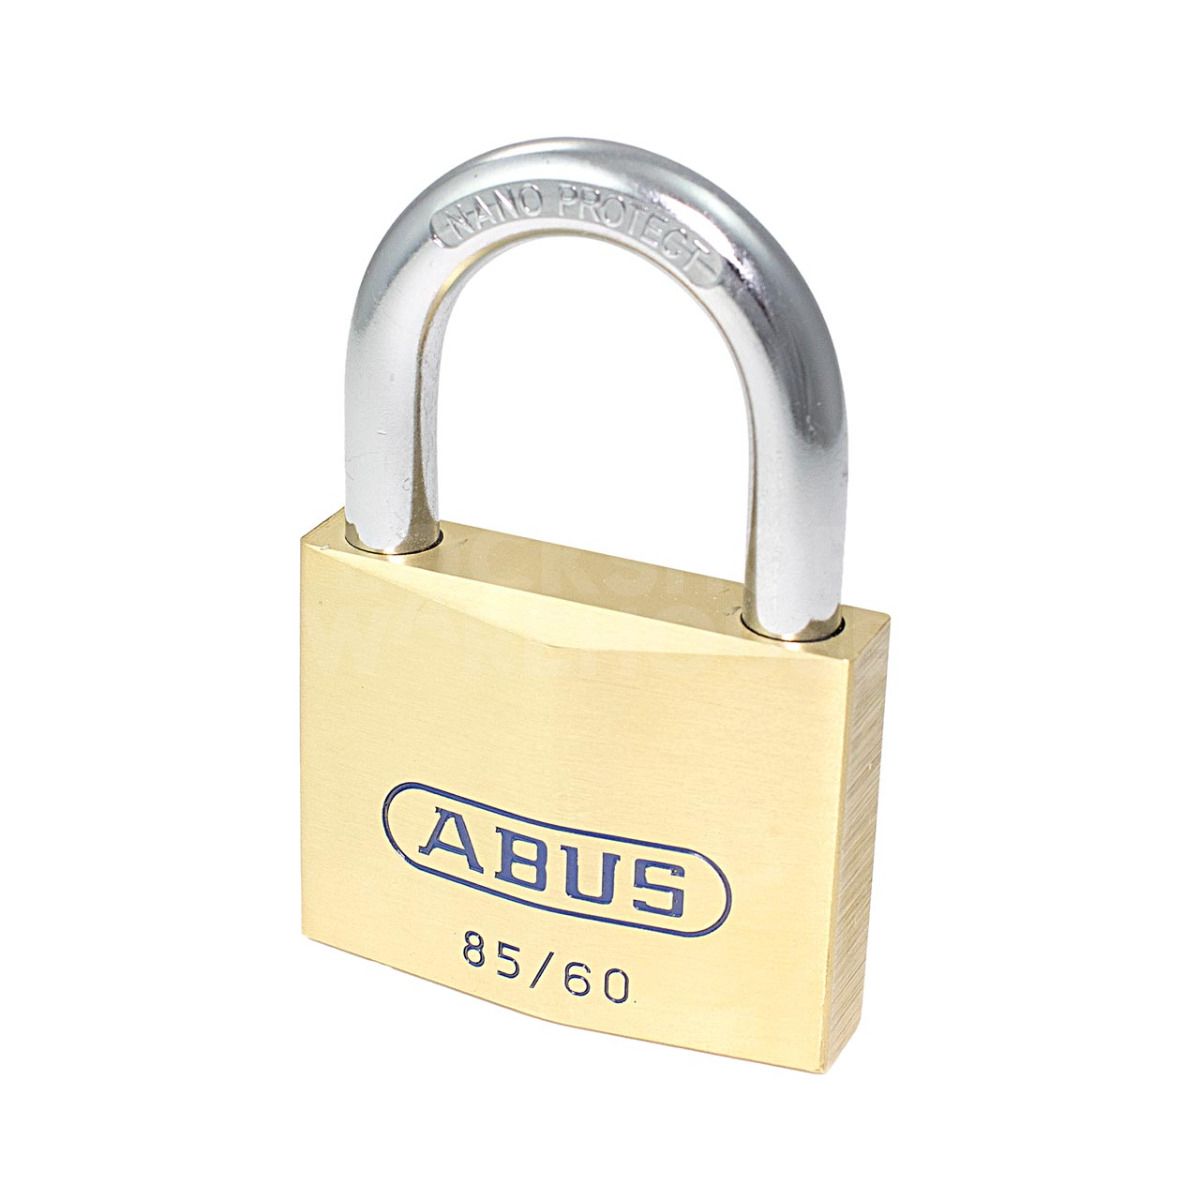 ABUS 85/60 Brass Padlock